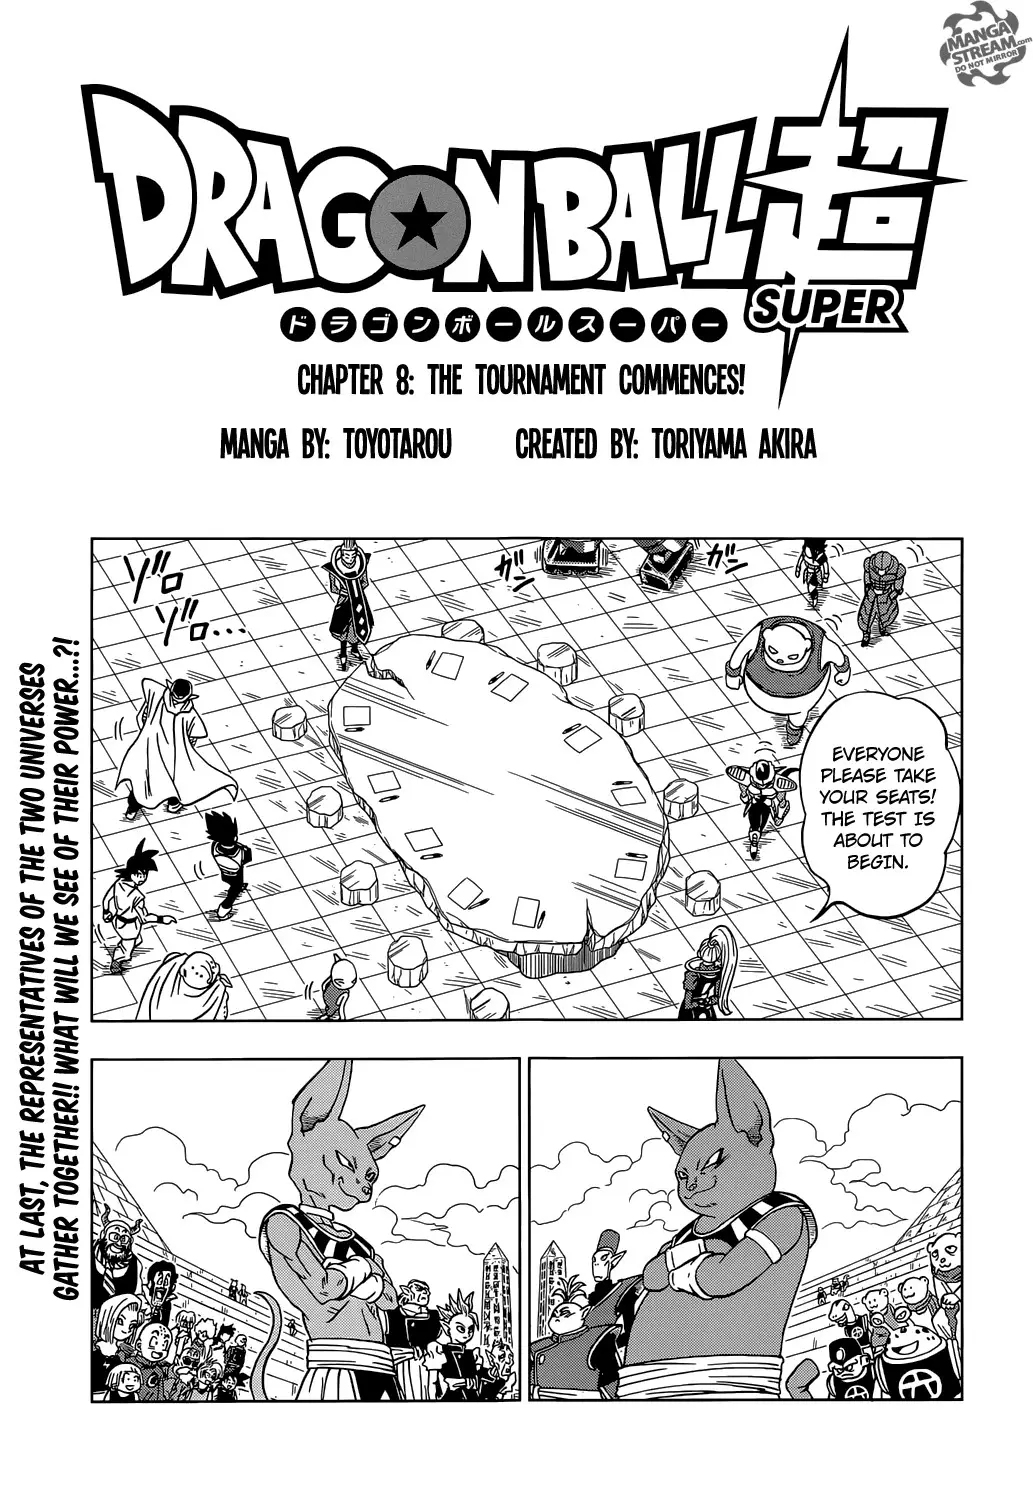 Dragon Ball Super - 8 page 001